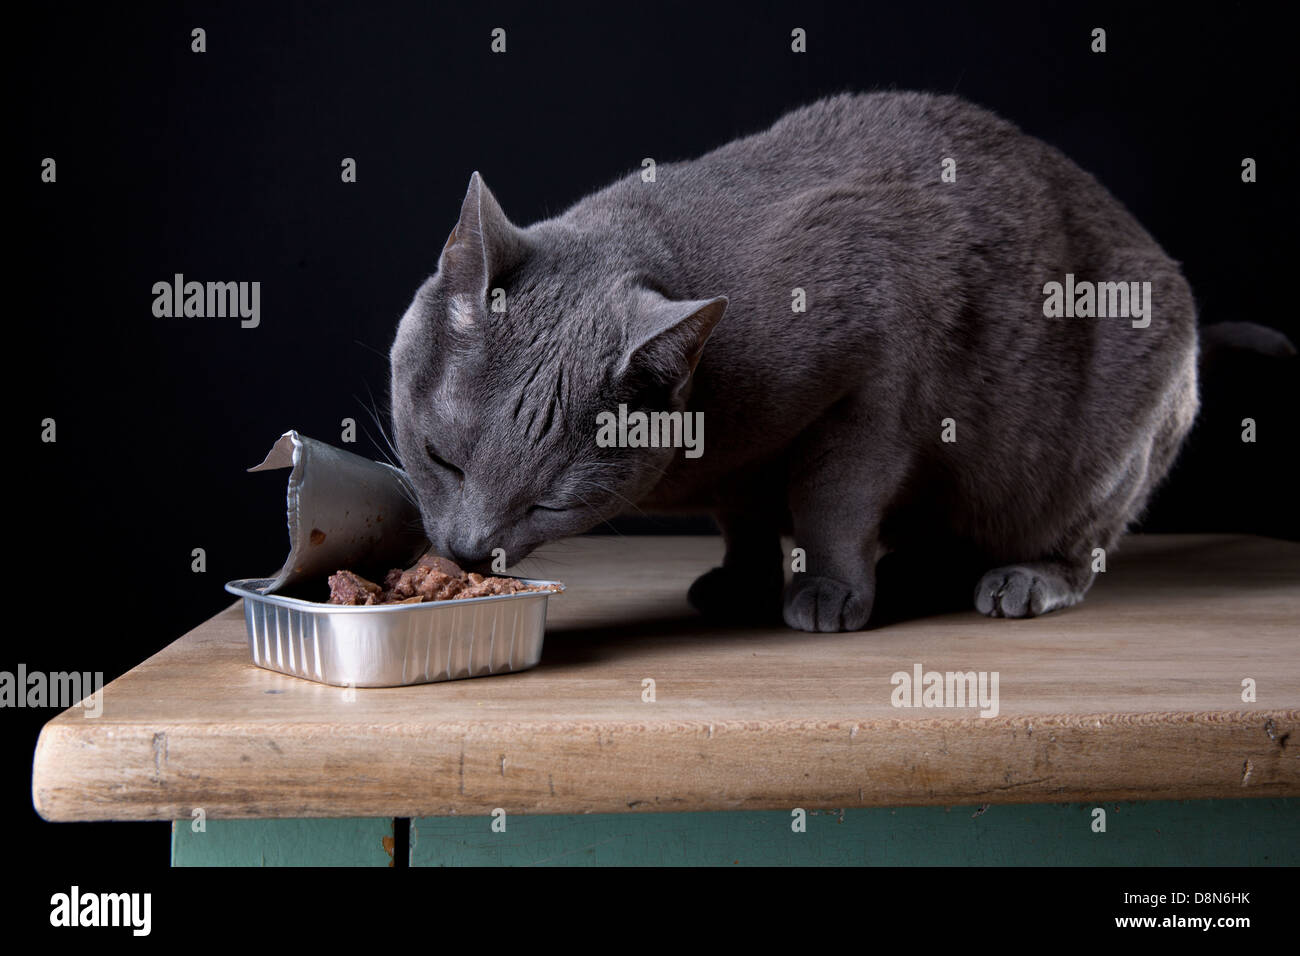 Feeding the Cat Stock Photo